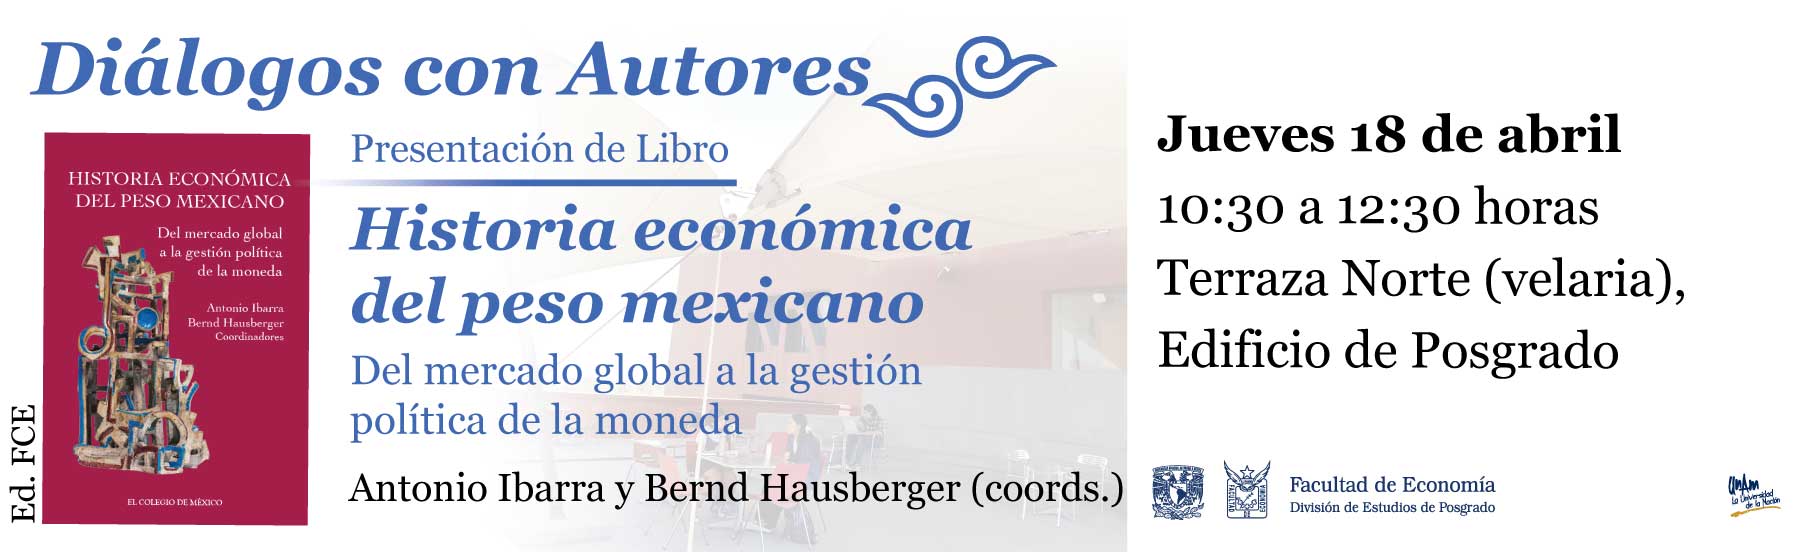 Diálogo con autores. Presentación de Libro "Historia económica del peso mexicano. Del mercado global a la gestión política de la moneda"